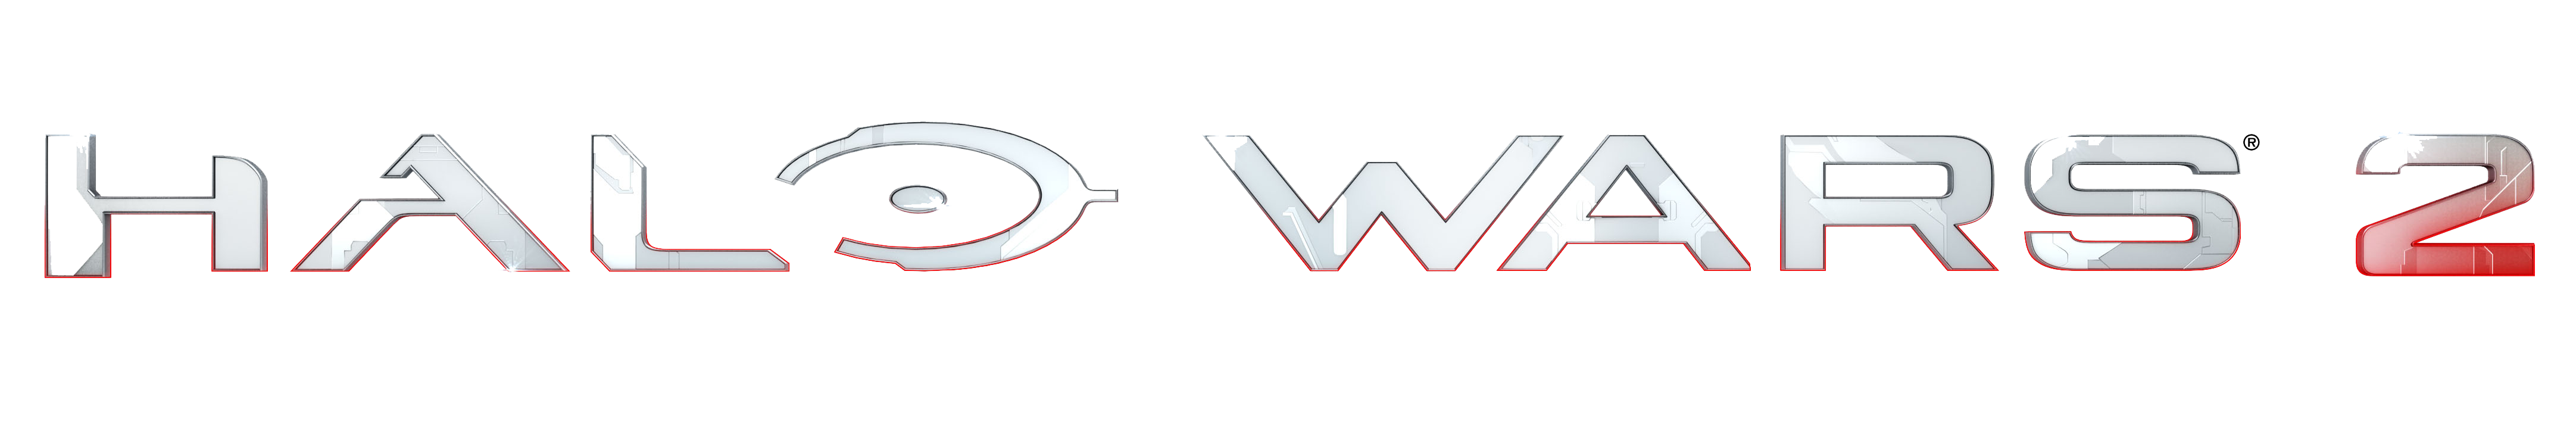 Halo Wars Logo Transparent PNG Image